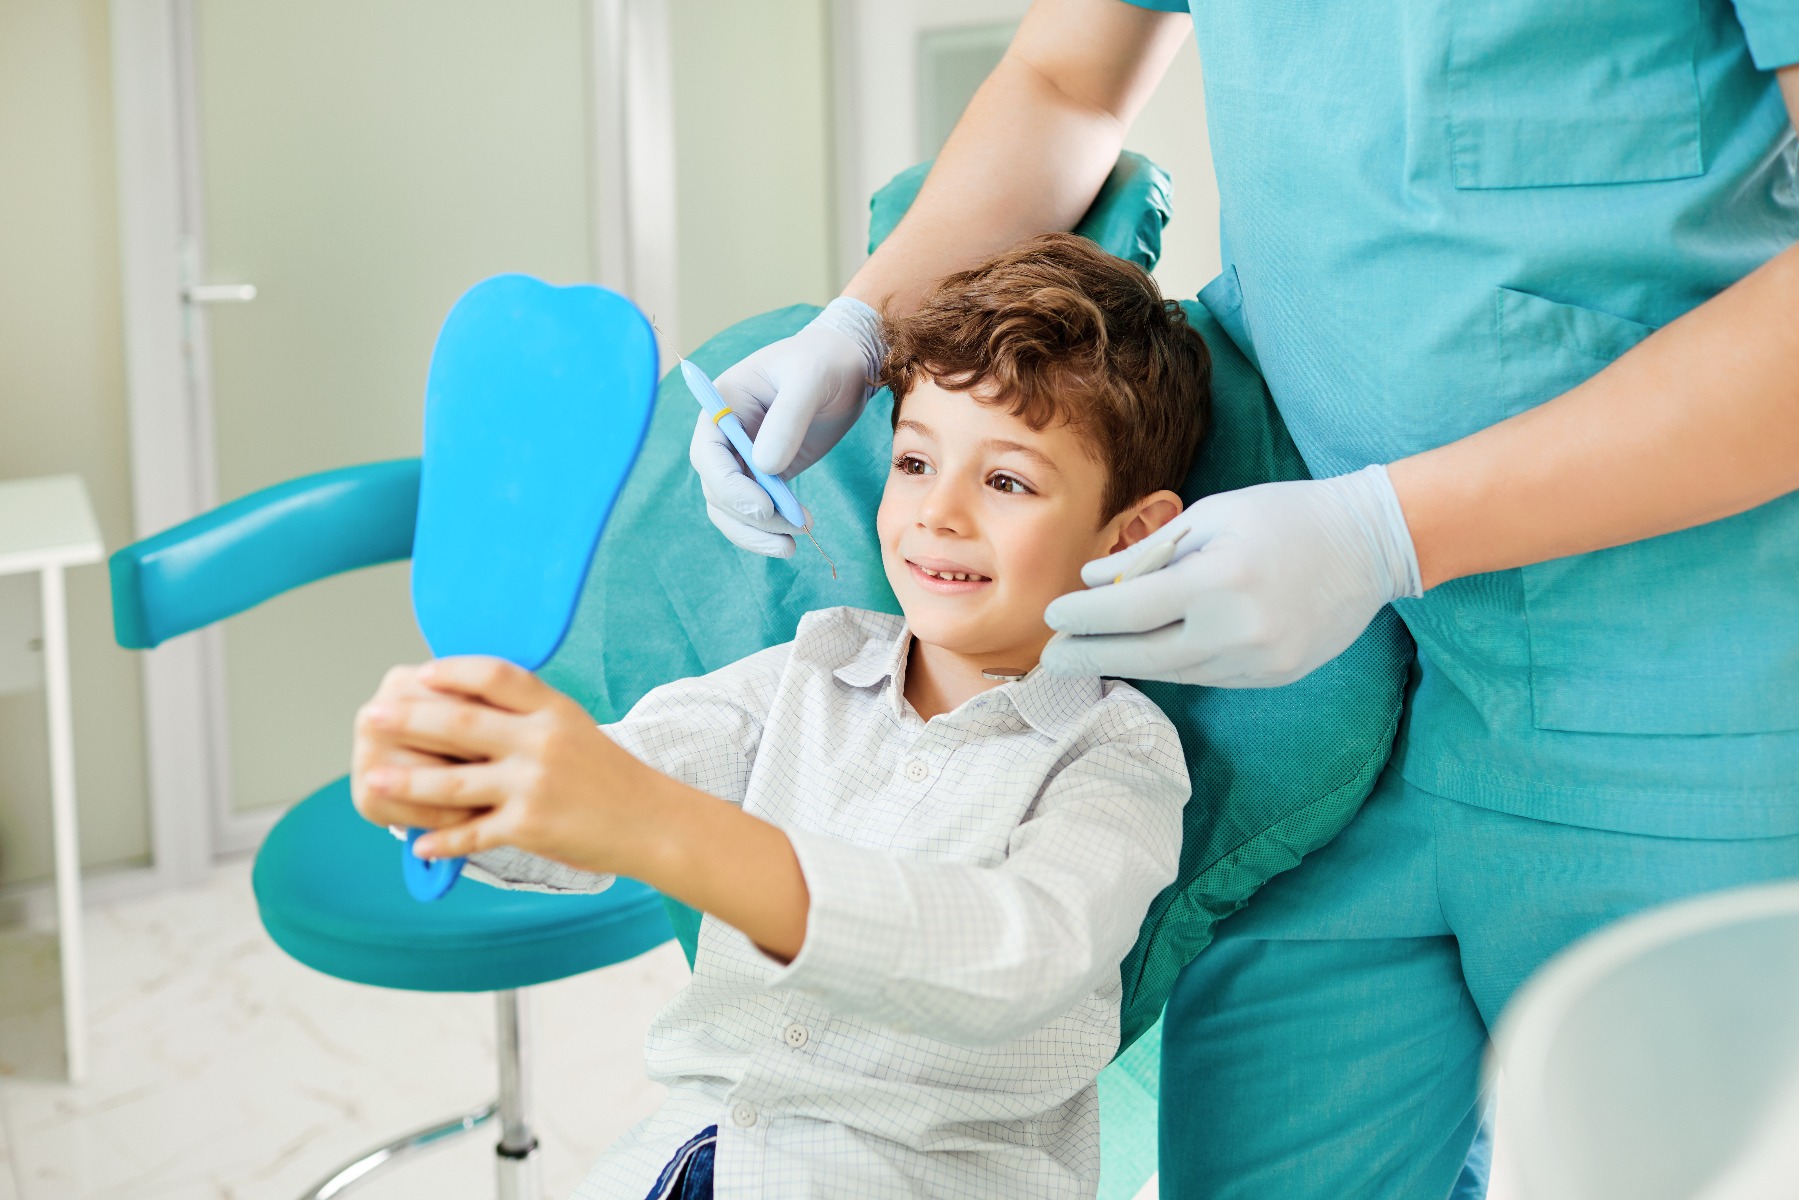 Enfant souriant avec un miroir chez le dentiste 